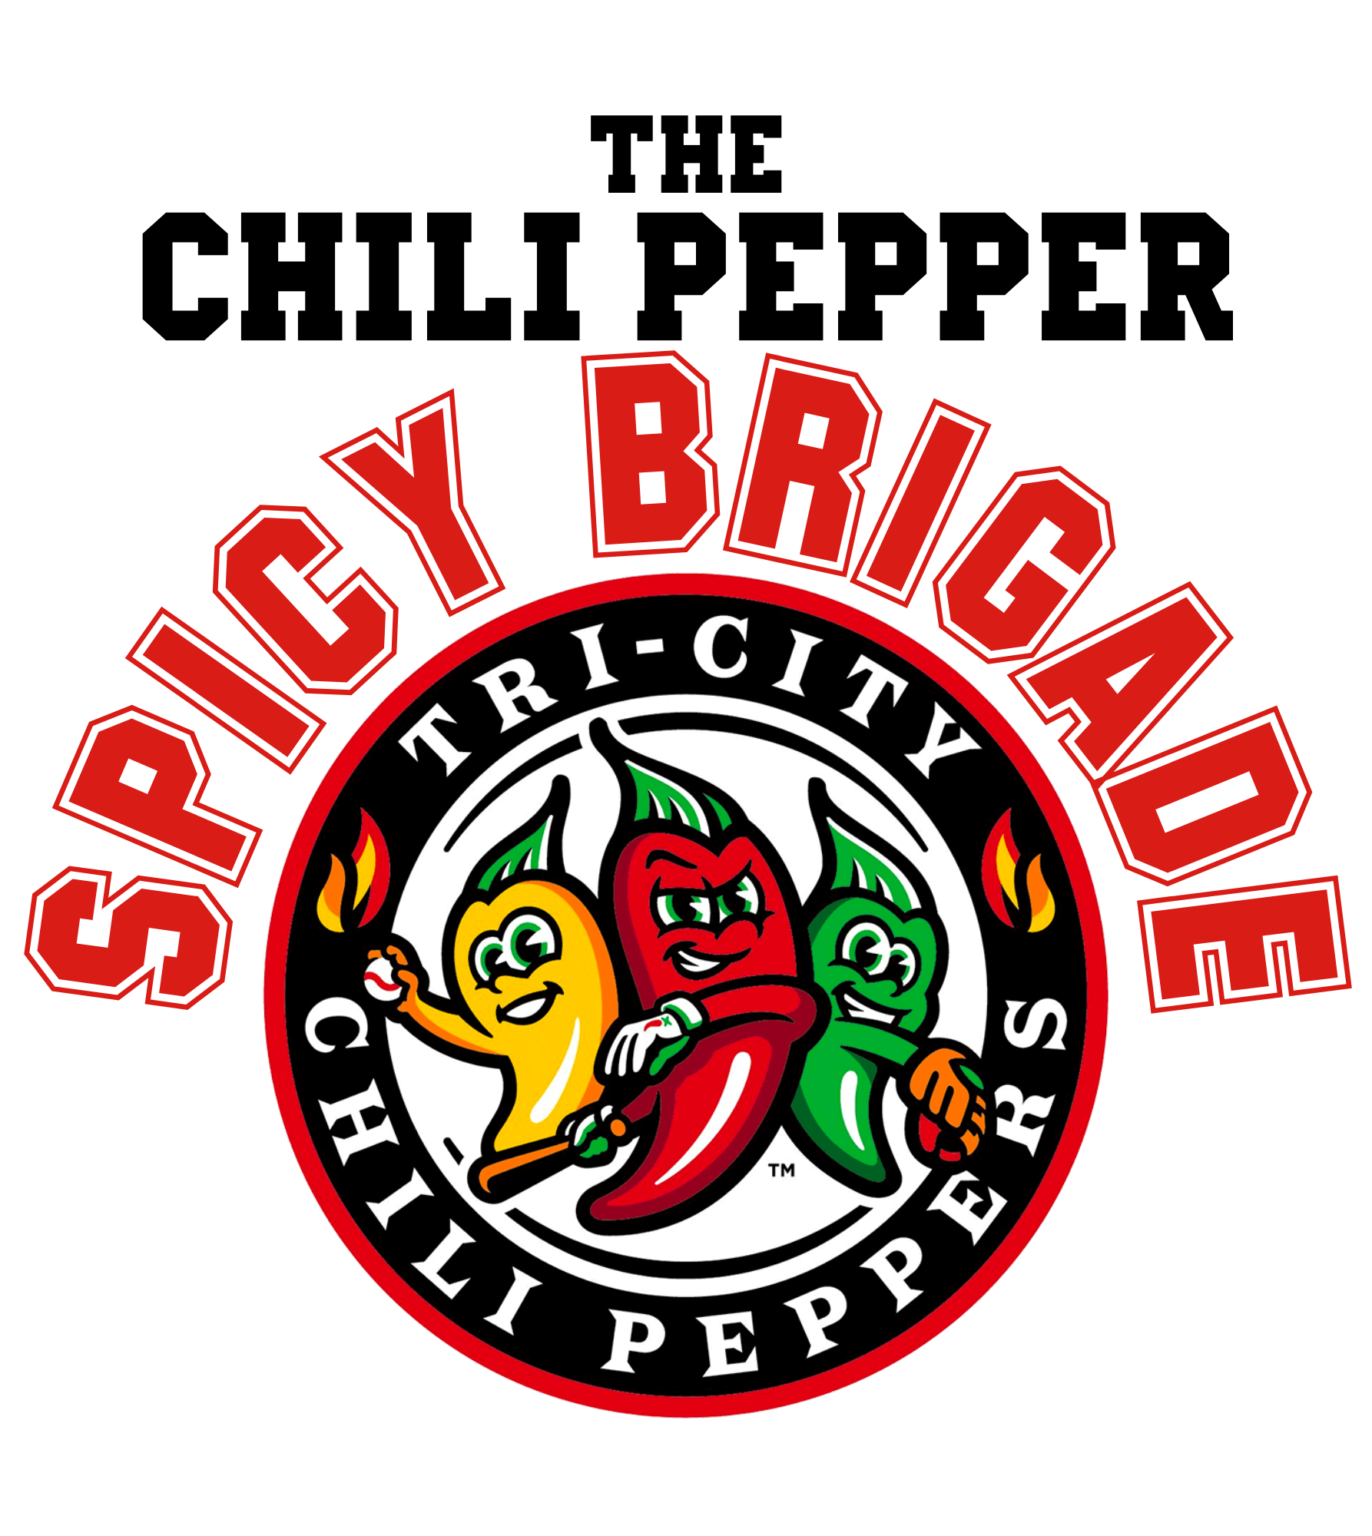 Spicy Brigade